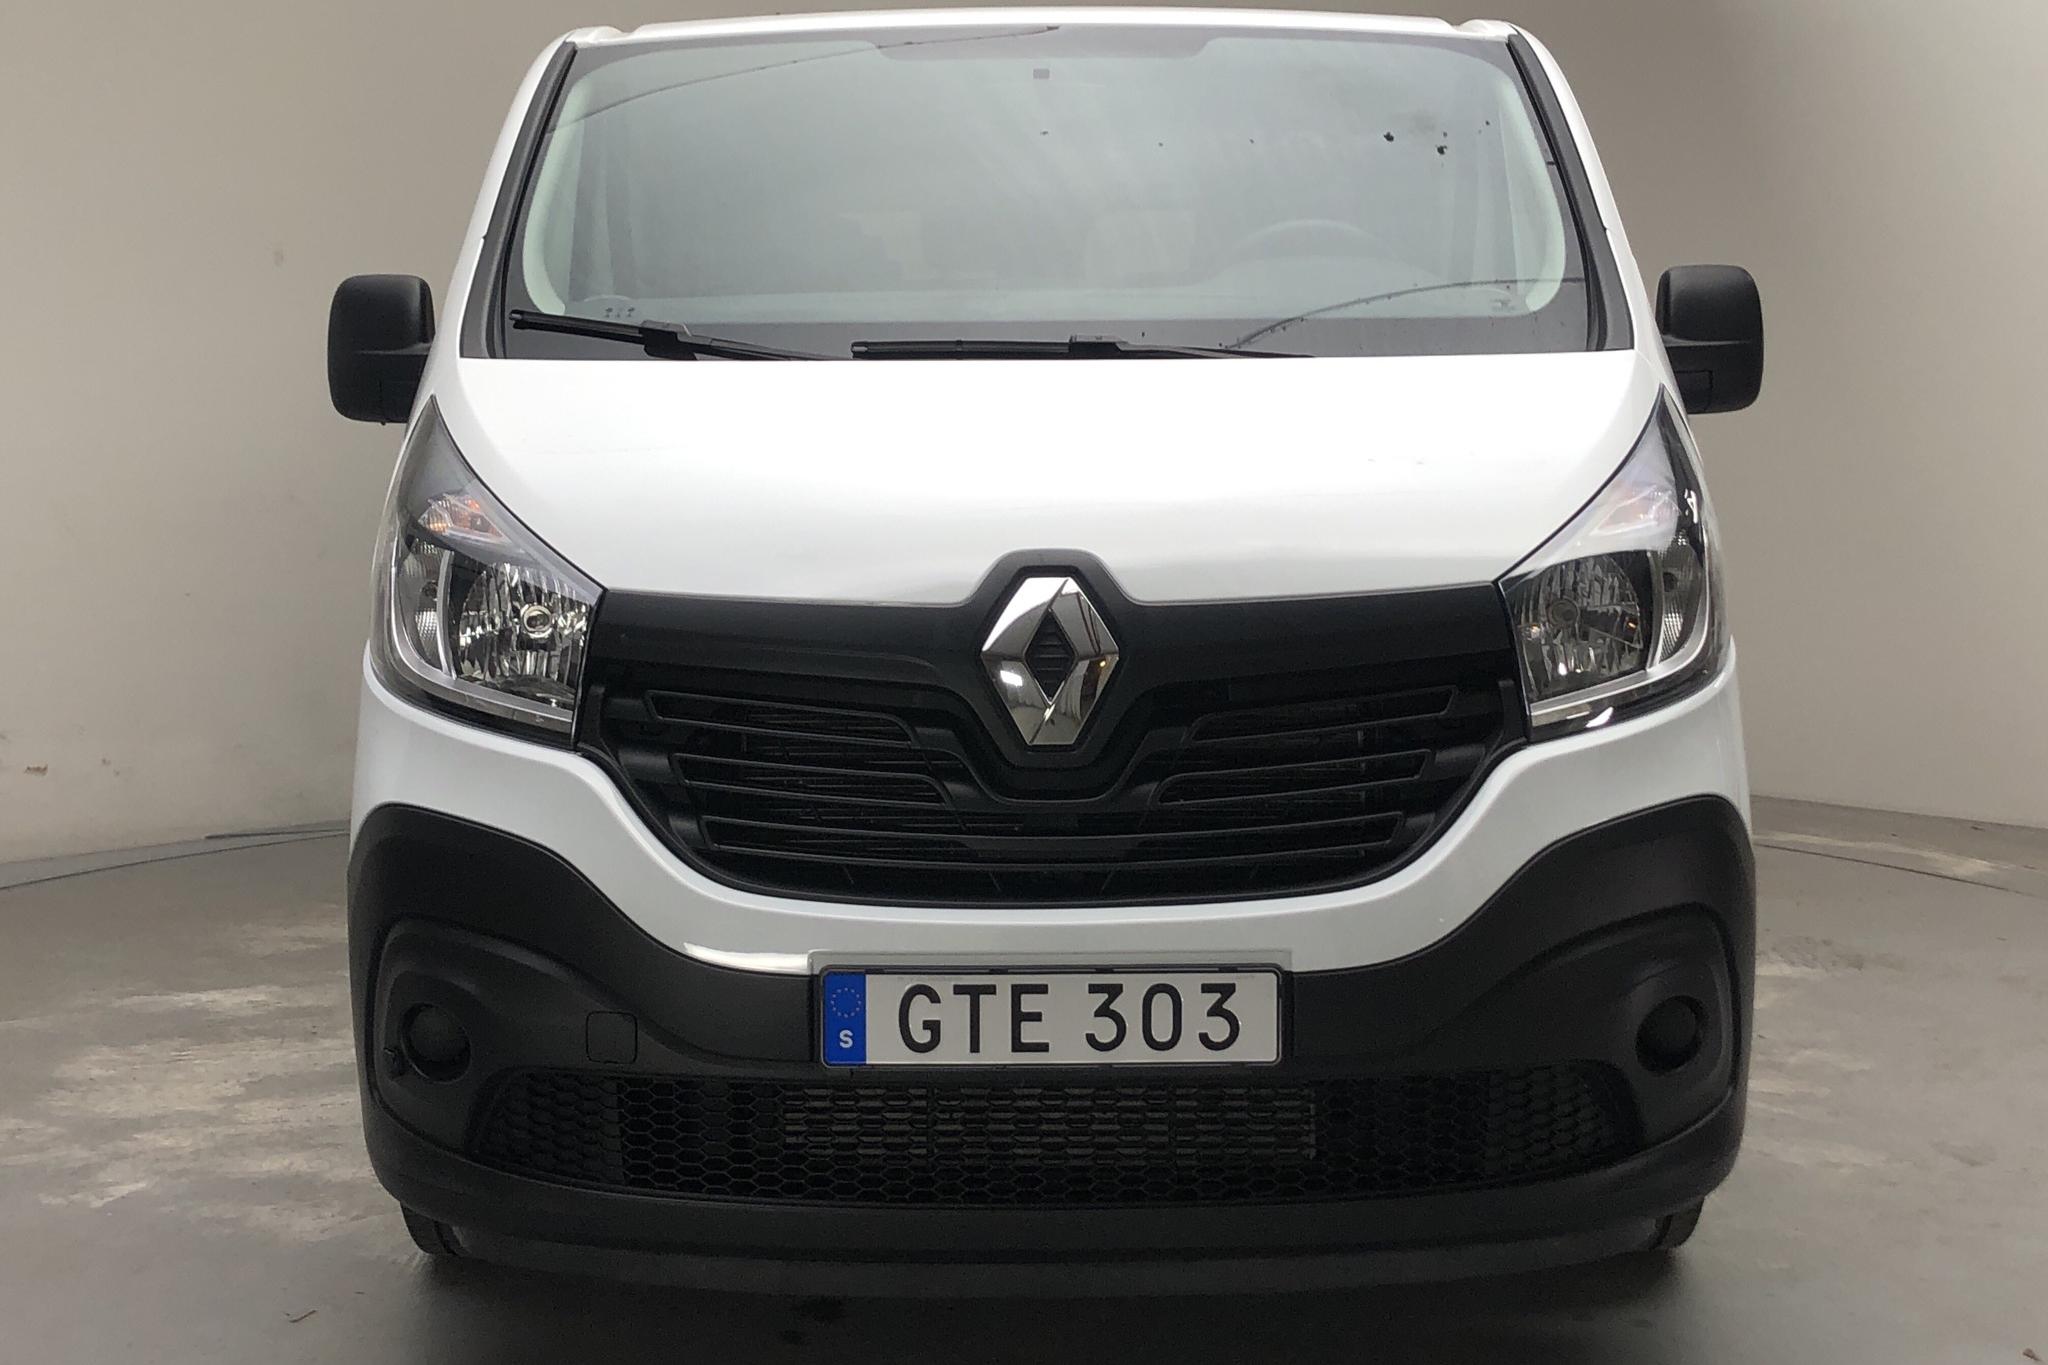 Renault Trafic 1.6 dCi Kombi (120hk) - 29 620 km - Manual - white - 2015